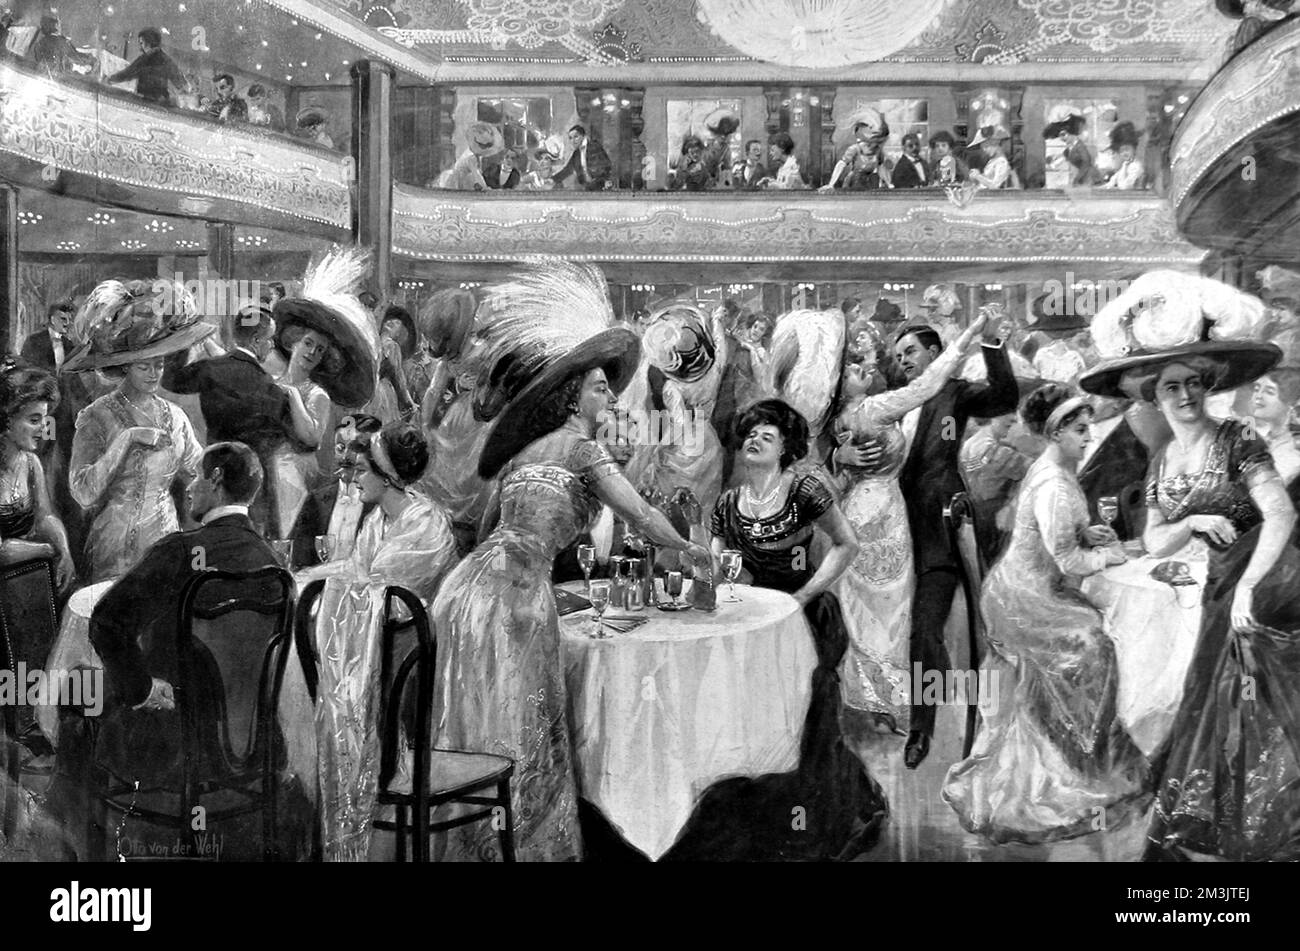 Scène au Moulin Rouge, Paris. Fondé par Charles Zidler en 1889, le club était un endroit populaire pour manger, danser et regarder des spectacles de cabaret. Le lieu a été immortalisé par Toulouse Lautrec dans ses célèbres affiches et peintures. Date: 1910 Banque D'Images